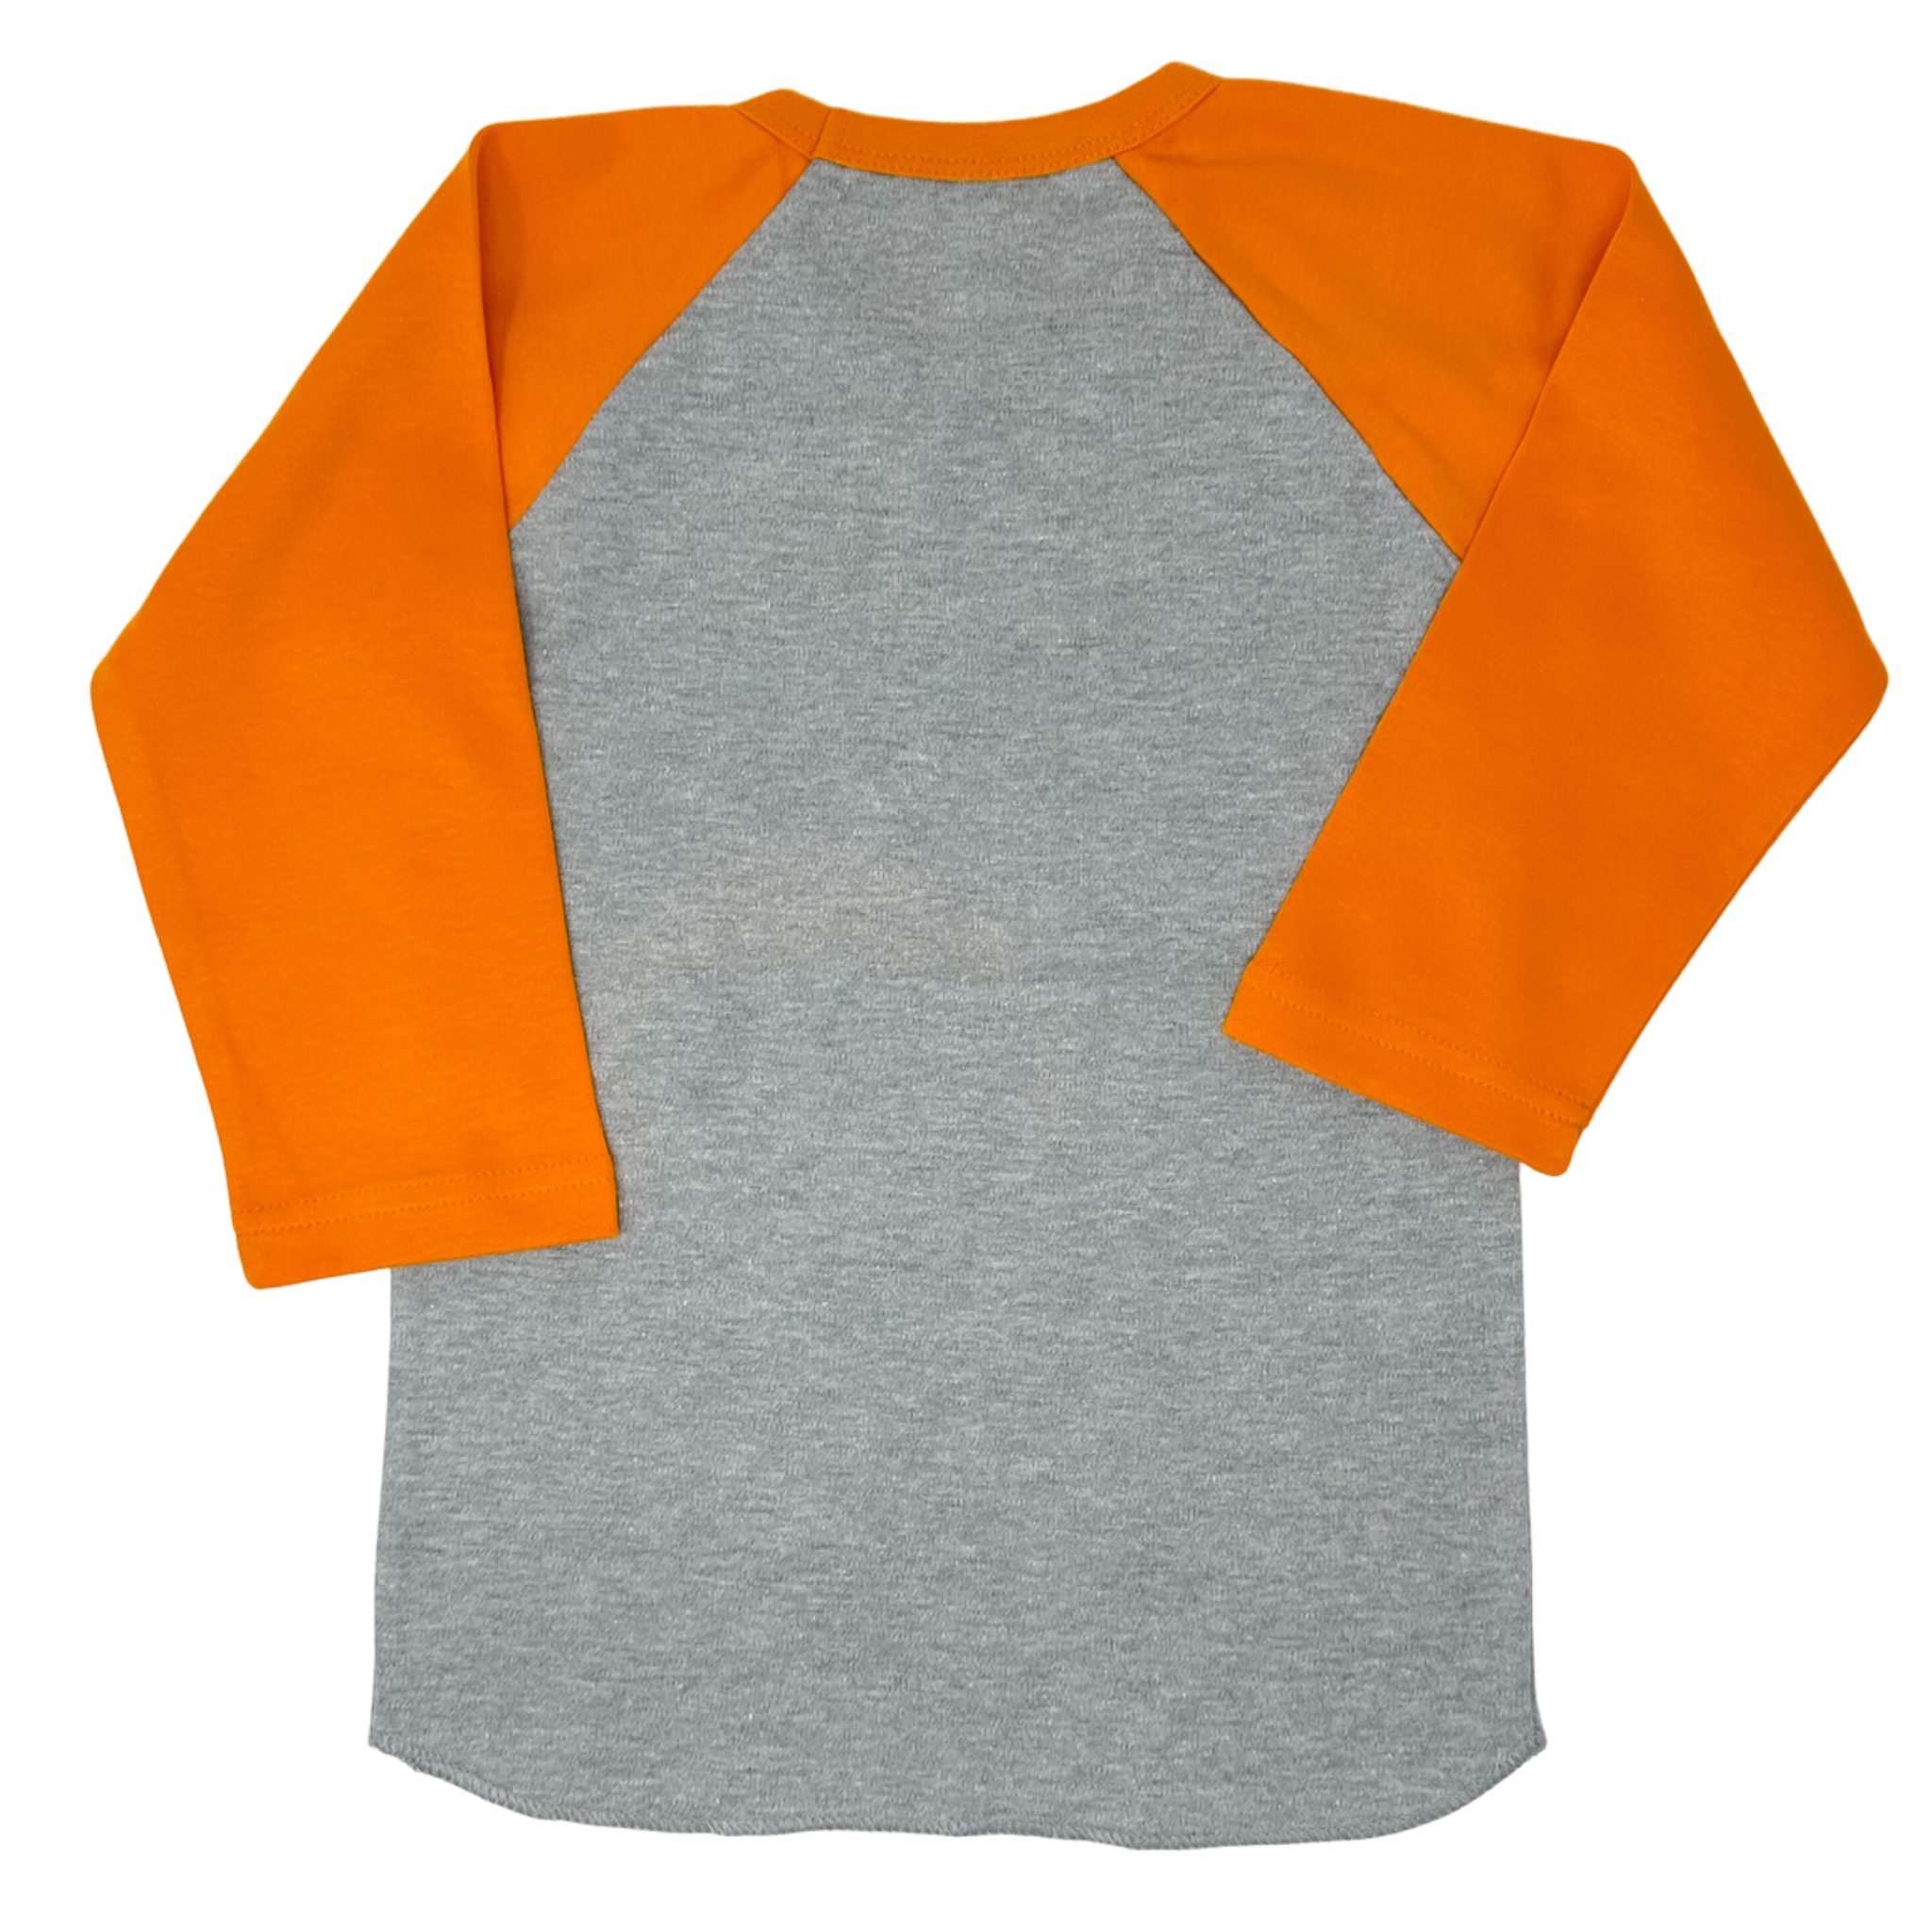 Creative Knitwear - Baseball Shirt - TN Orange